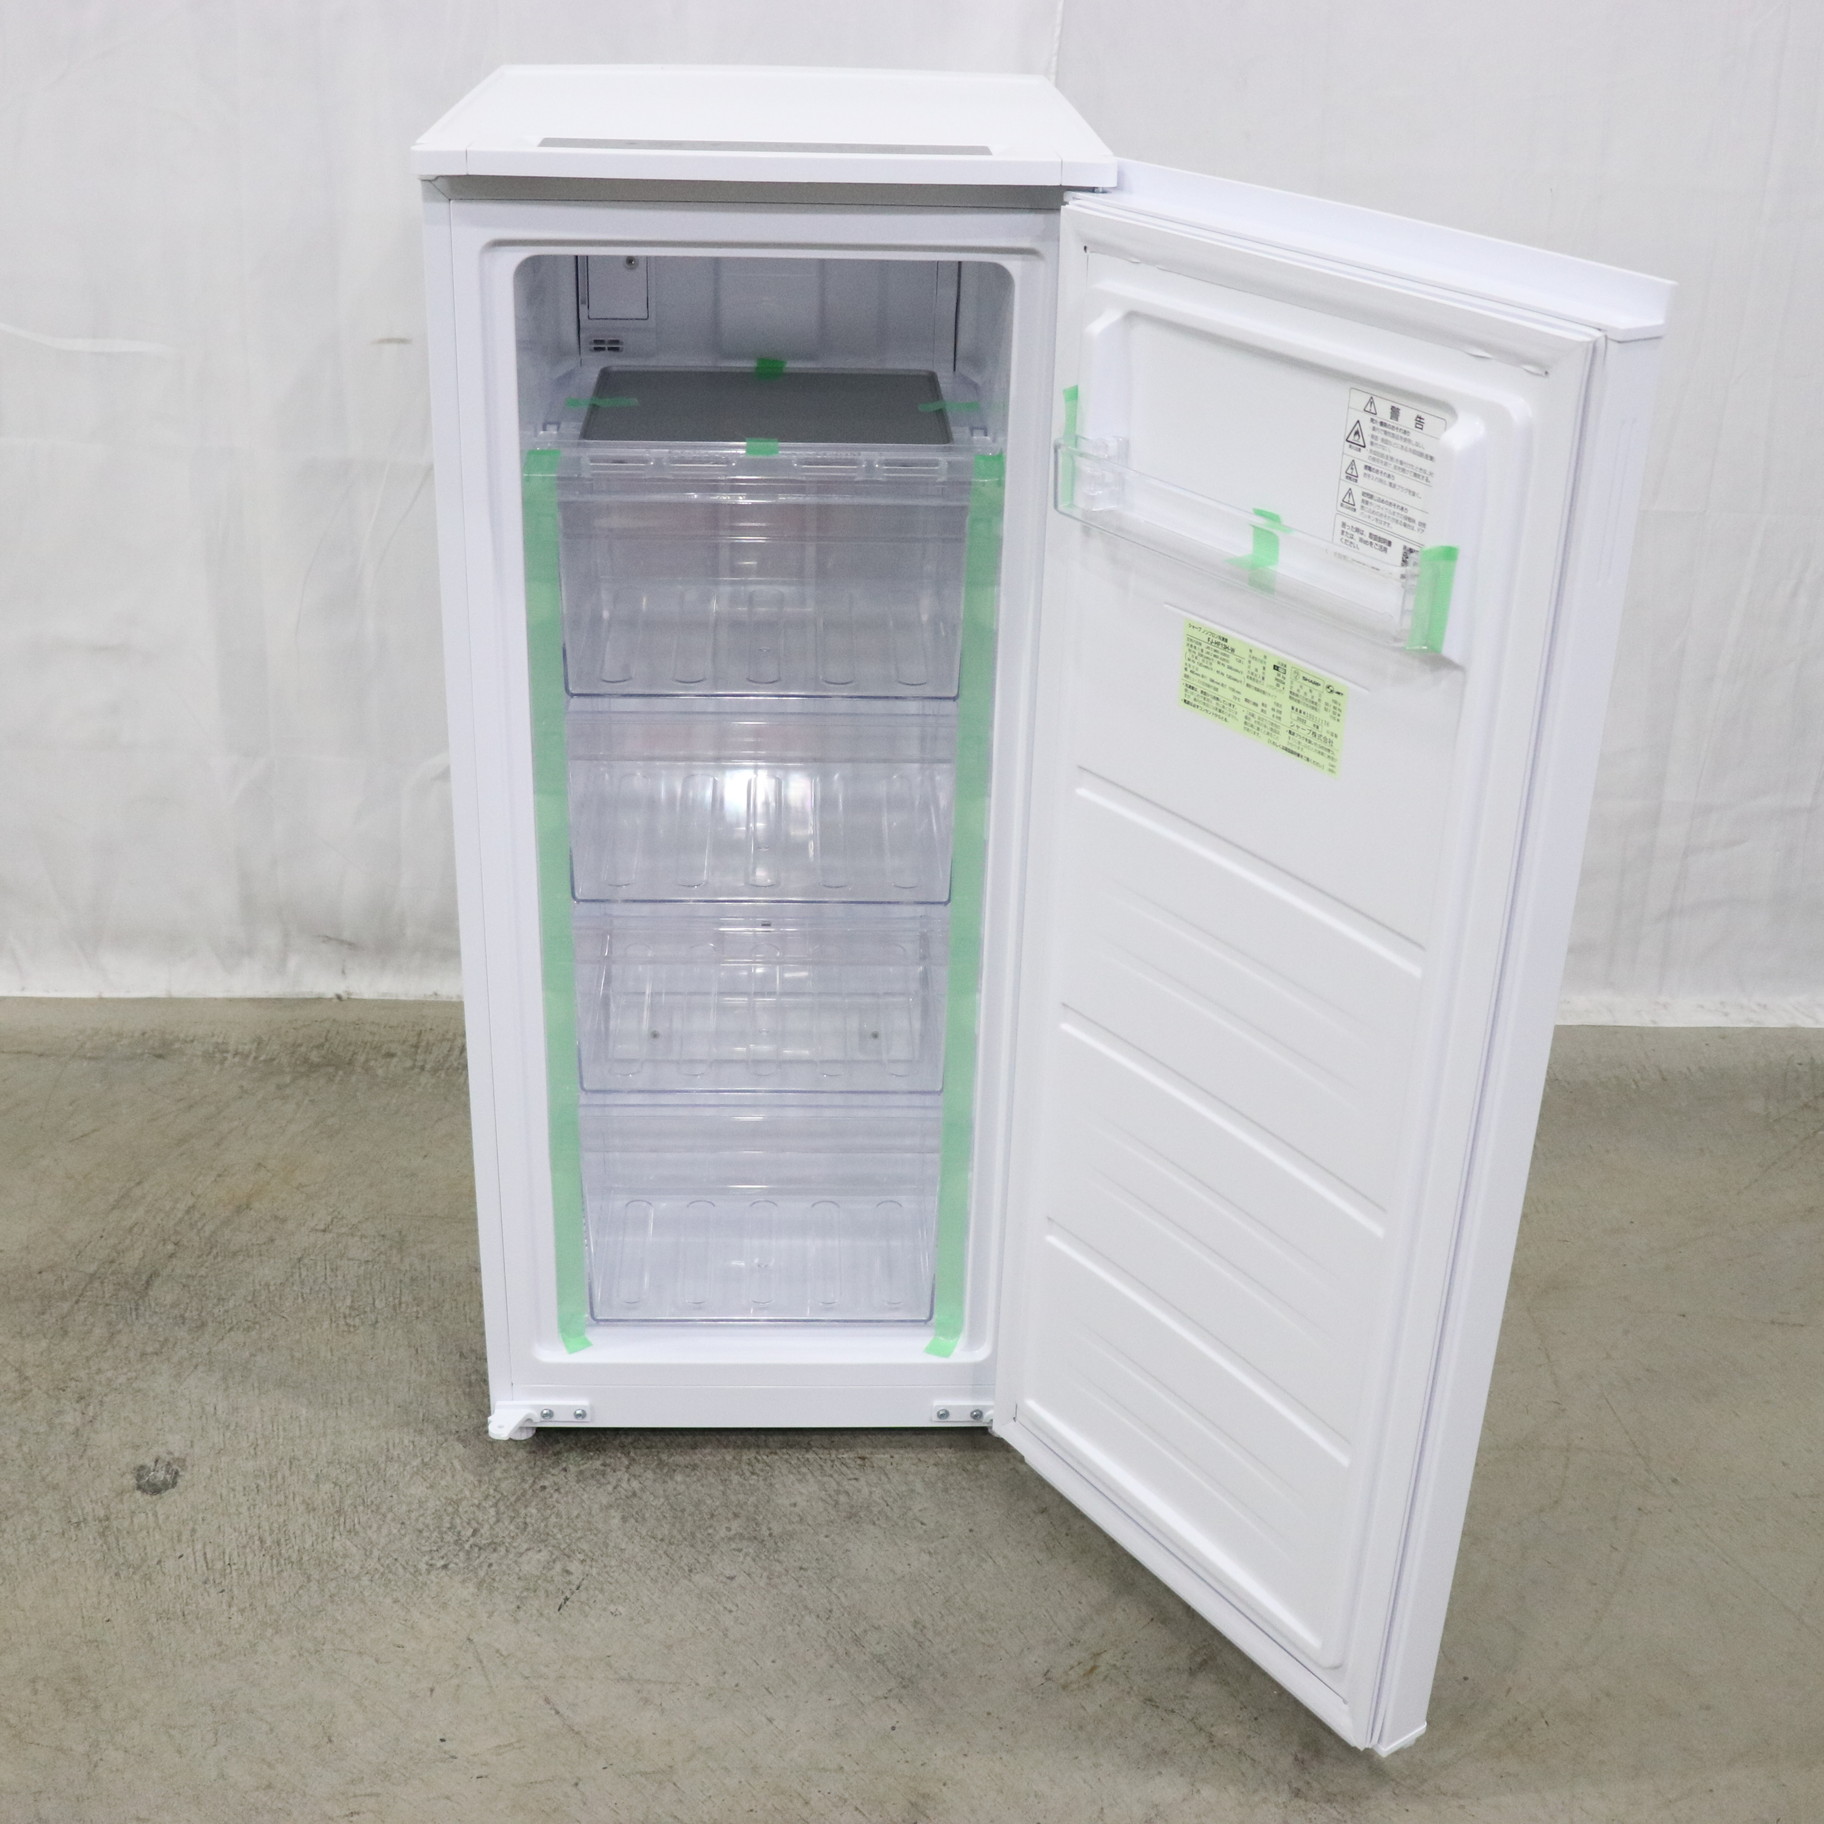 設置＋長期保証】シャープ(SHARP) FJ-HF13H-W(スノーホワイト) 1ドア冷凍庫 つけかえどっちもドアタイプ 126L 冷蔵庫・冷凍庫